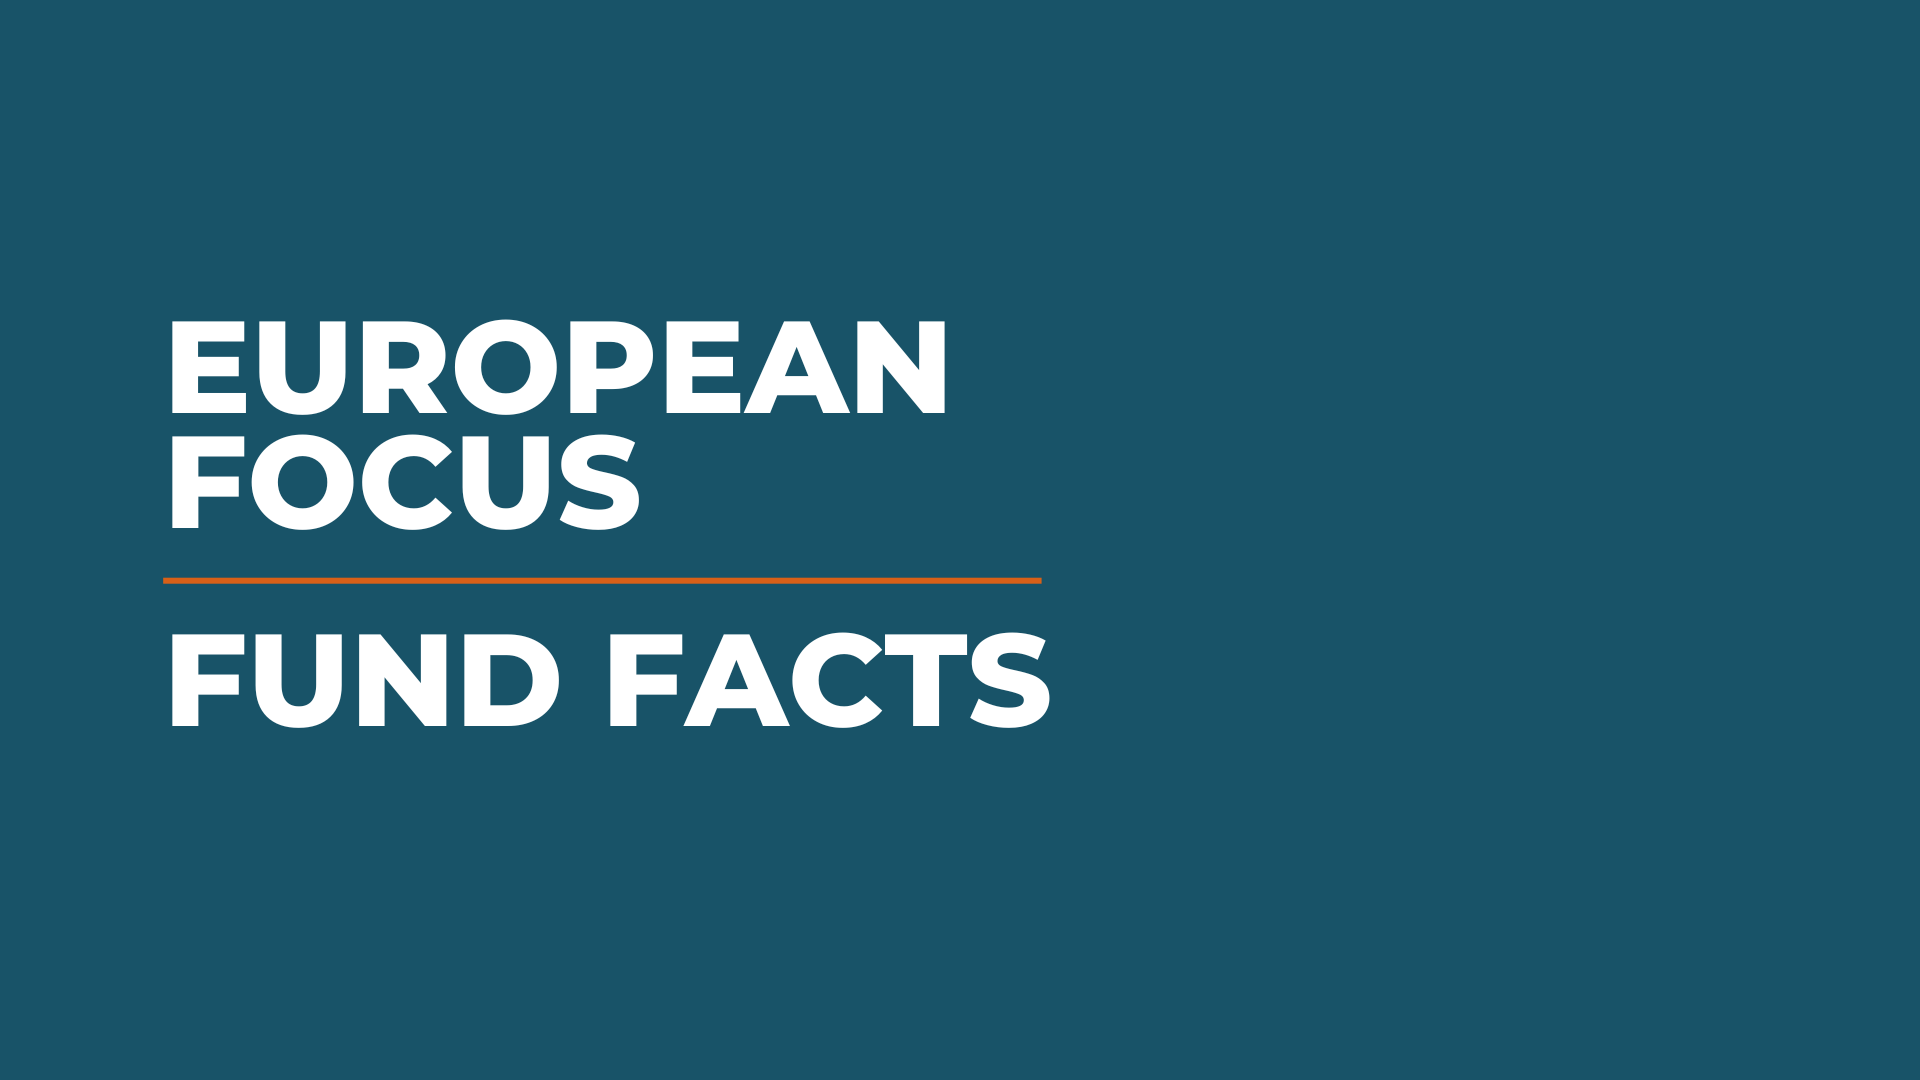 Caption: European focus fund facts